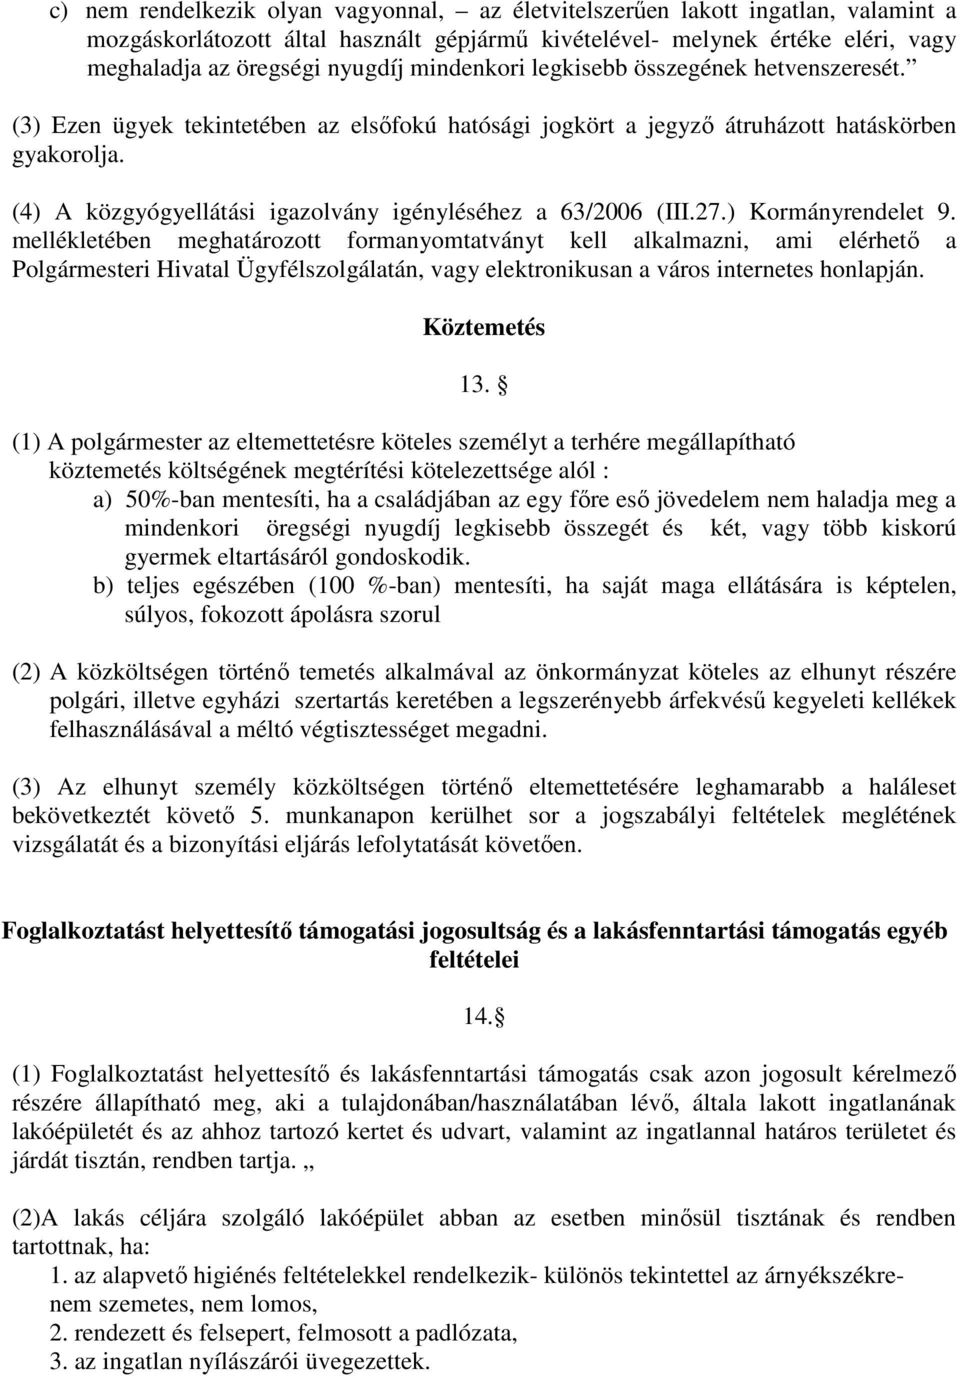 (4) A közgyógyellátási igazolvány igényléséhez a 63/2006 (III.27.) Kormányrendelet 9.